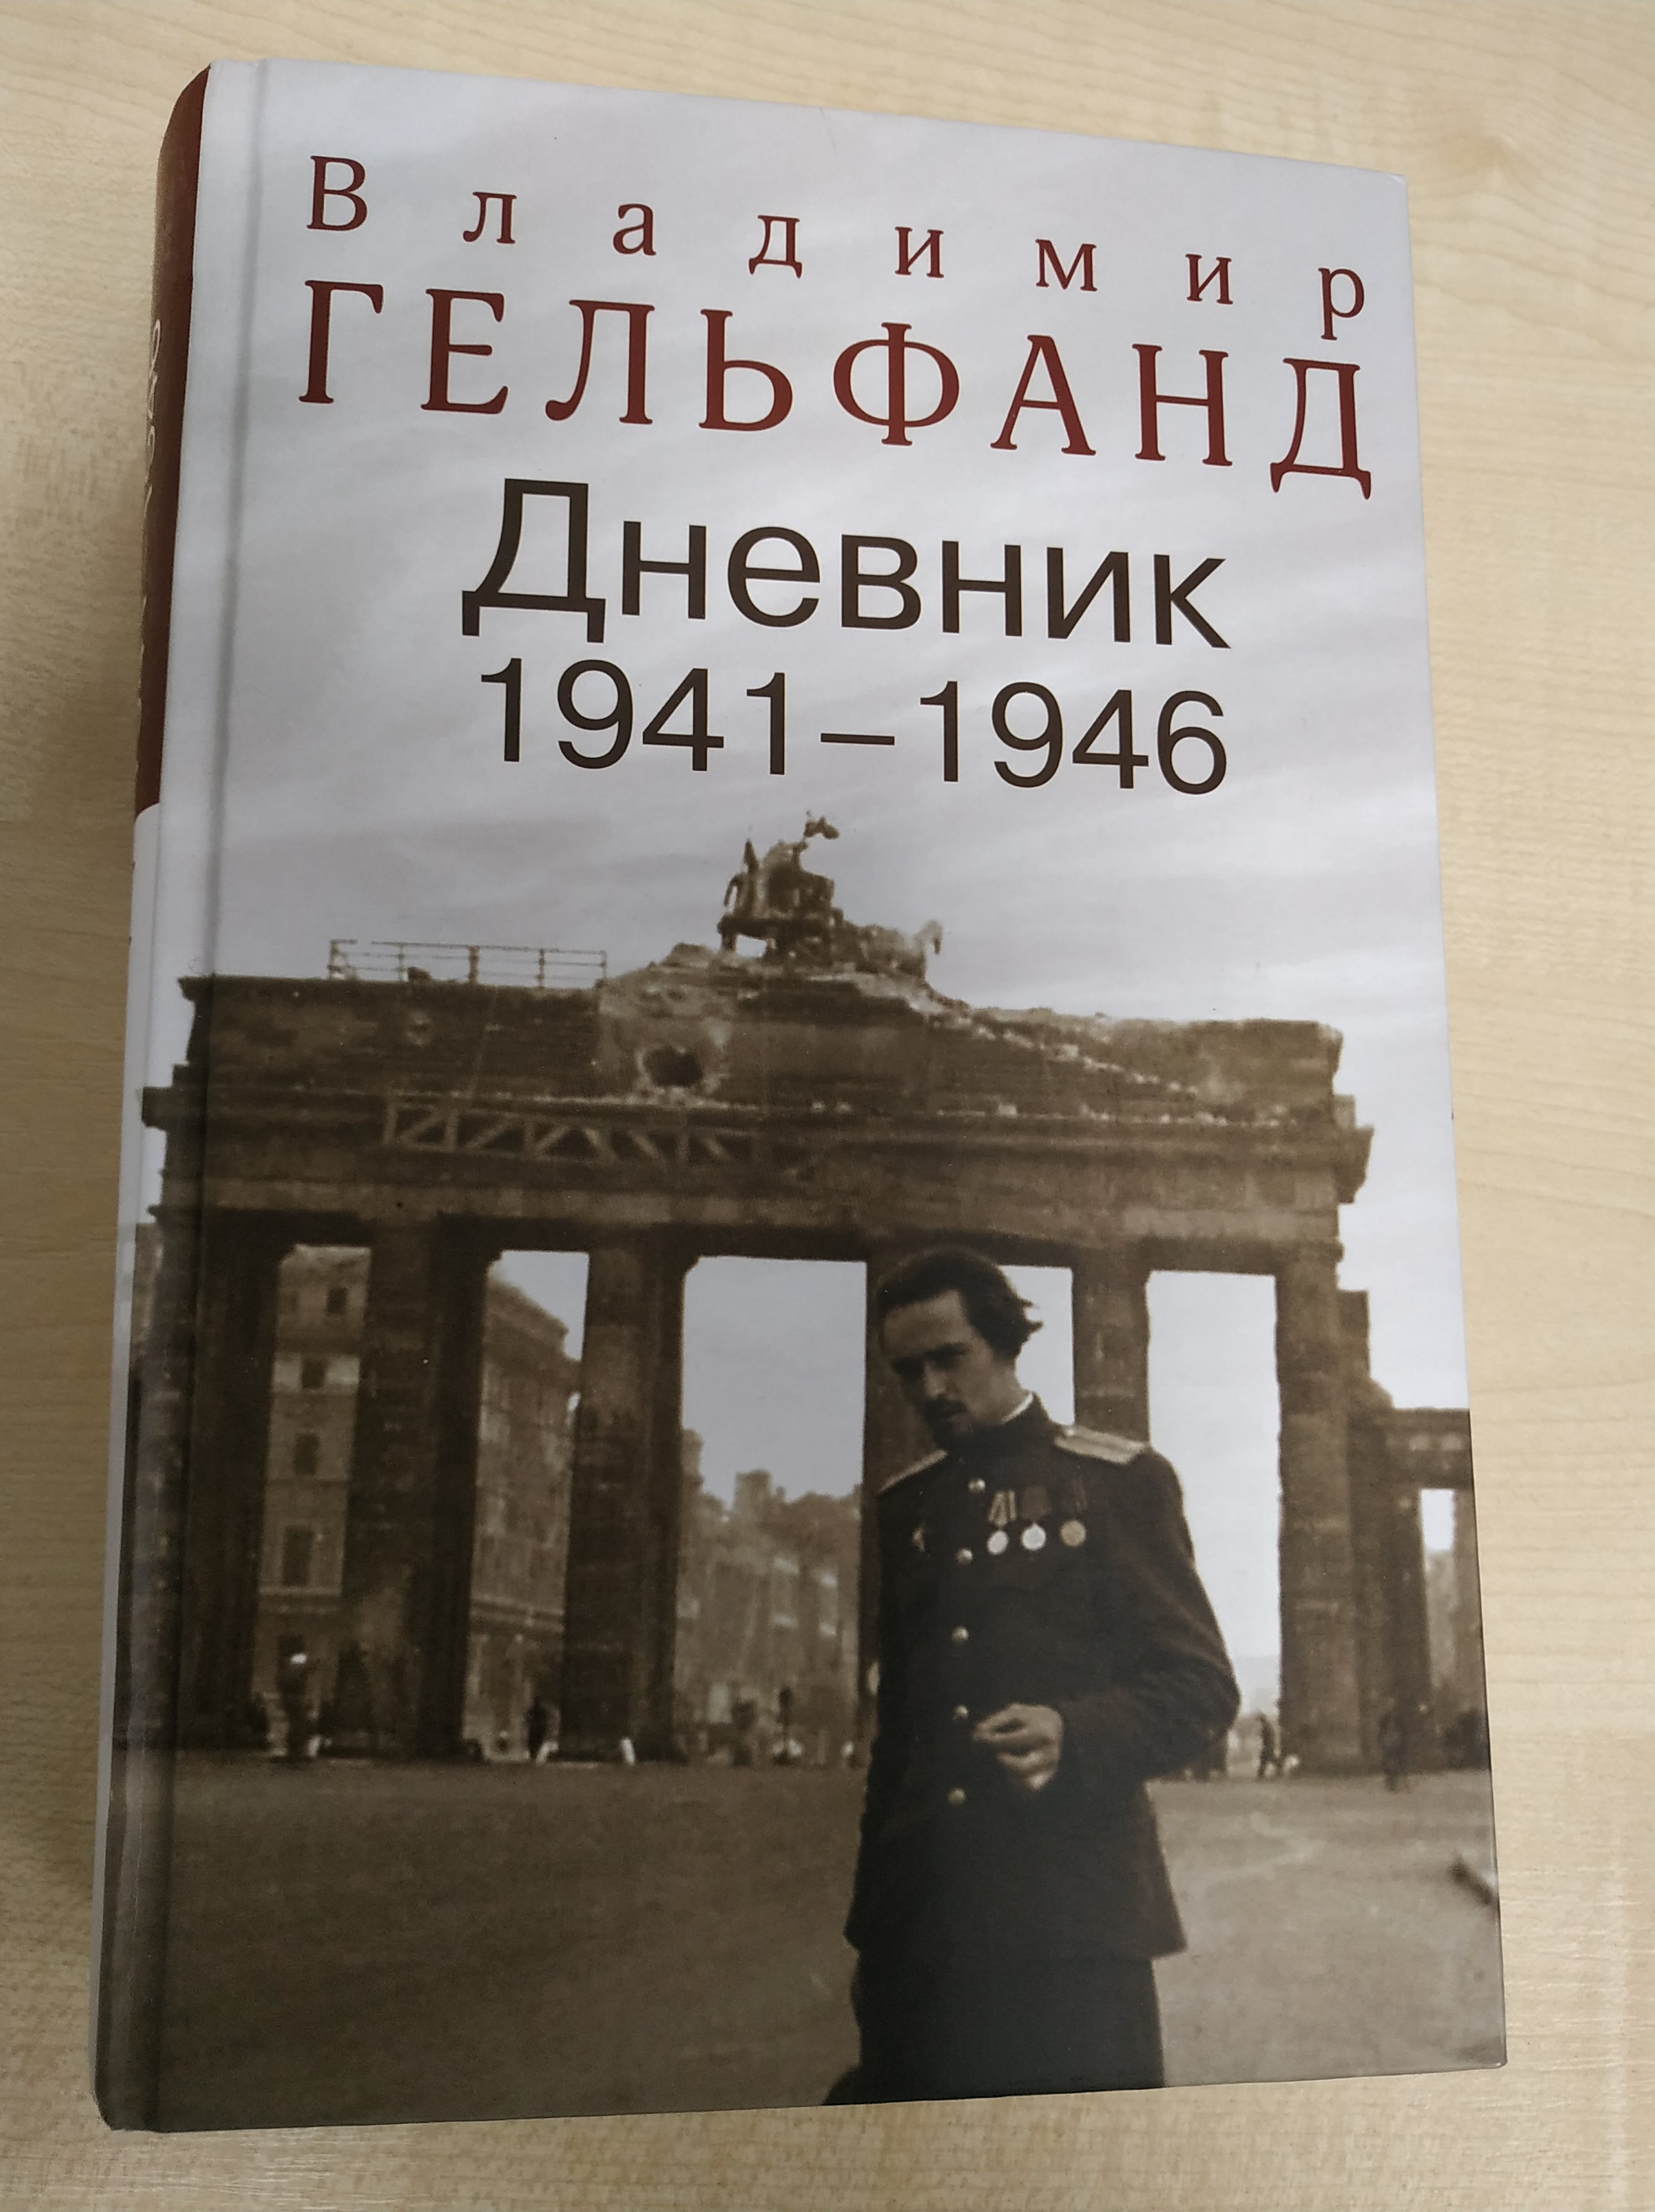 Щоденник сержанта, потім лейтенанта Володимира Гельфанда. Записи охоплюють період з травня 1941 до жовтня 1946 р.